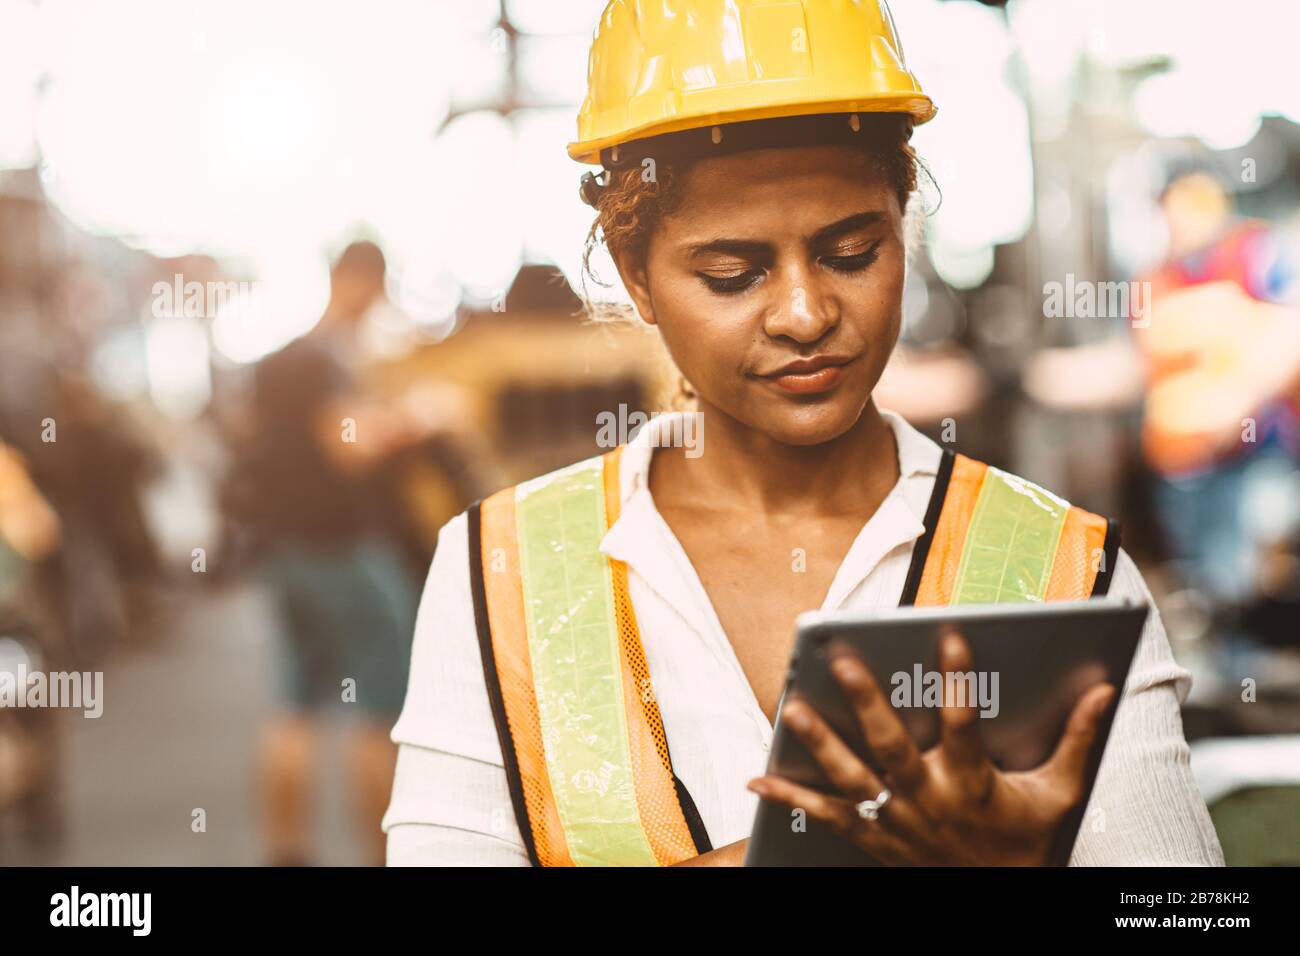 Les femmes américaines travaillant dans l'ingénieur de maintenance de l'industrie lourde se réjouiront de travailler avec un uniforme de sécurité et un casque utilisant une tablette pour contrôler la machine Banque D'Images